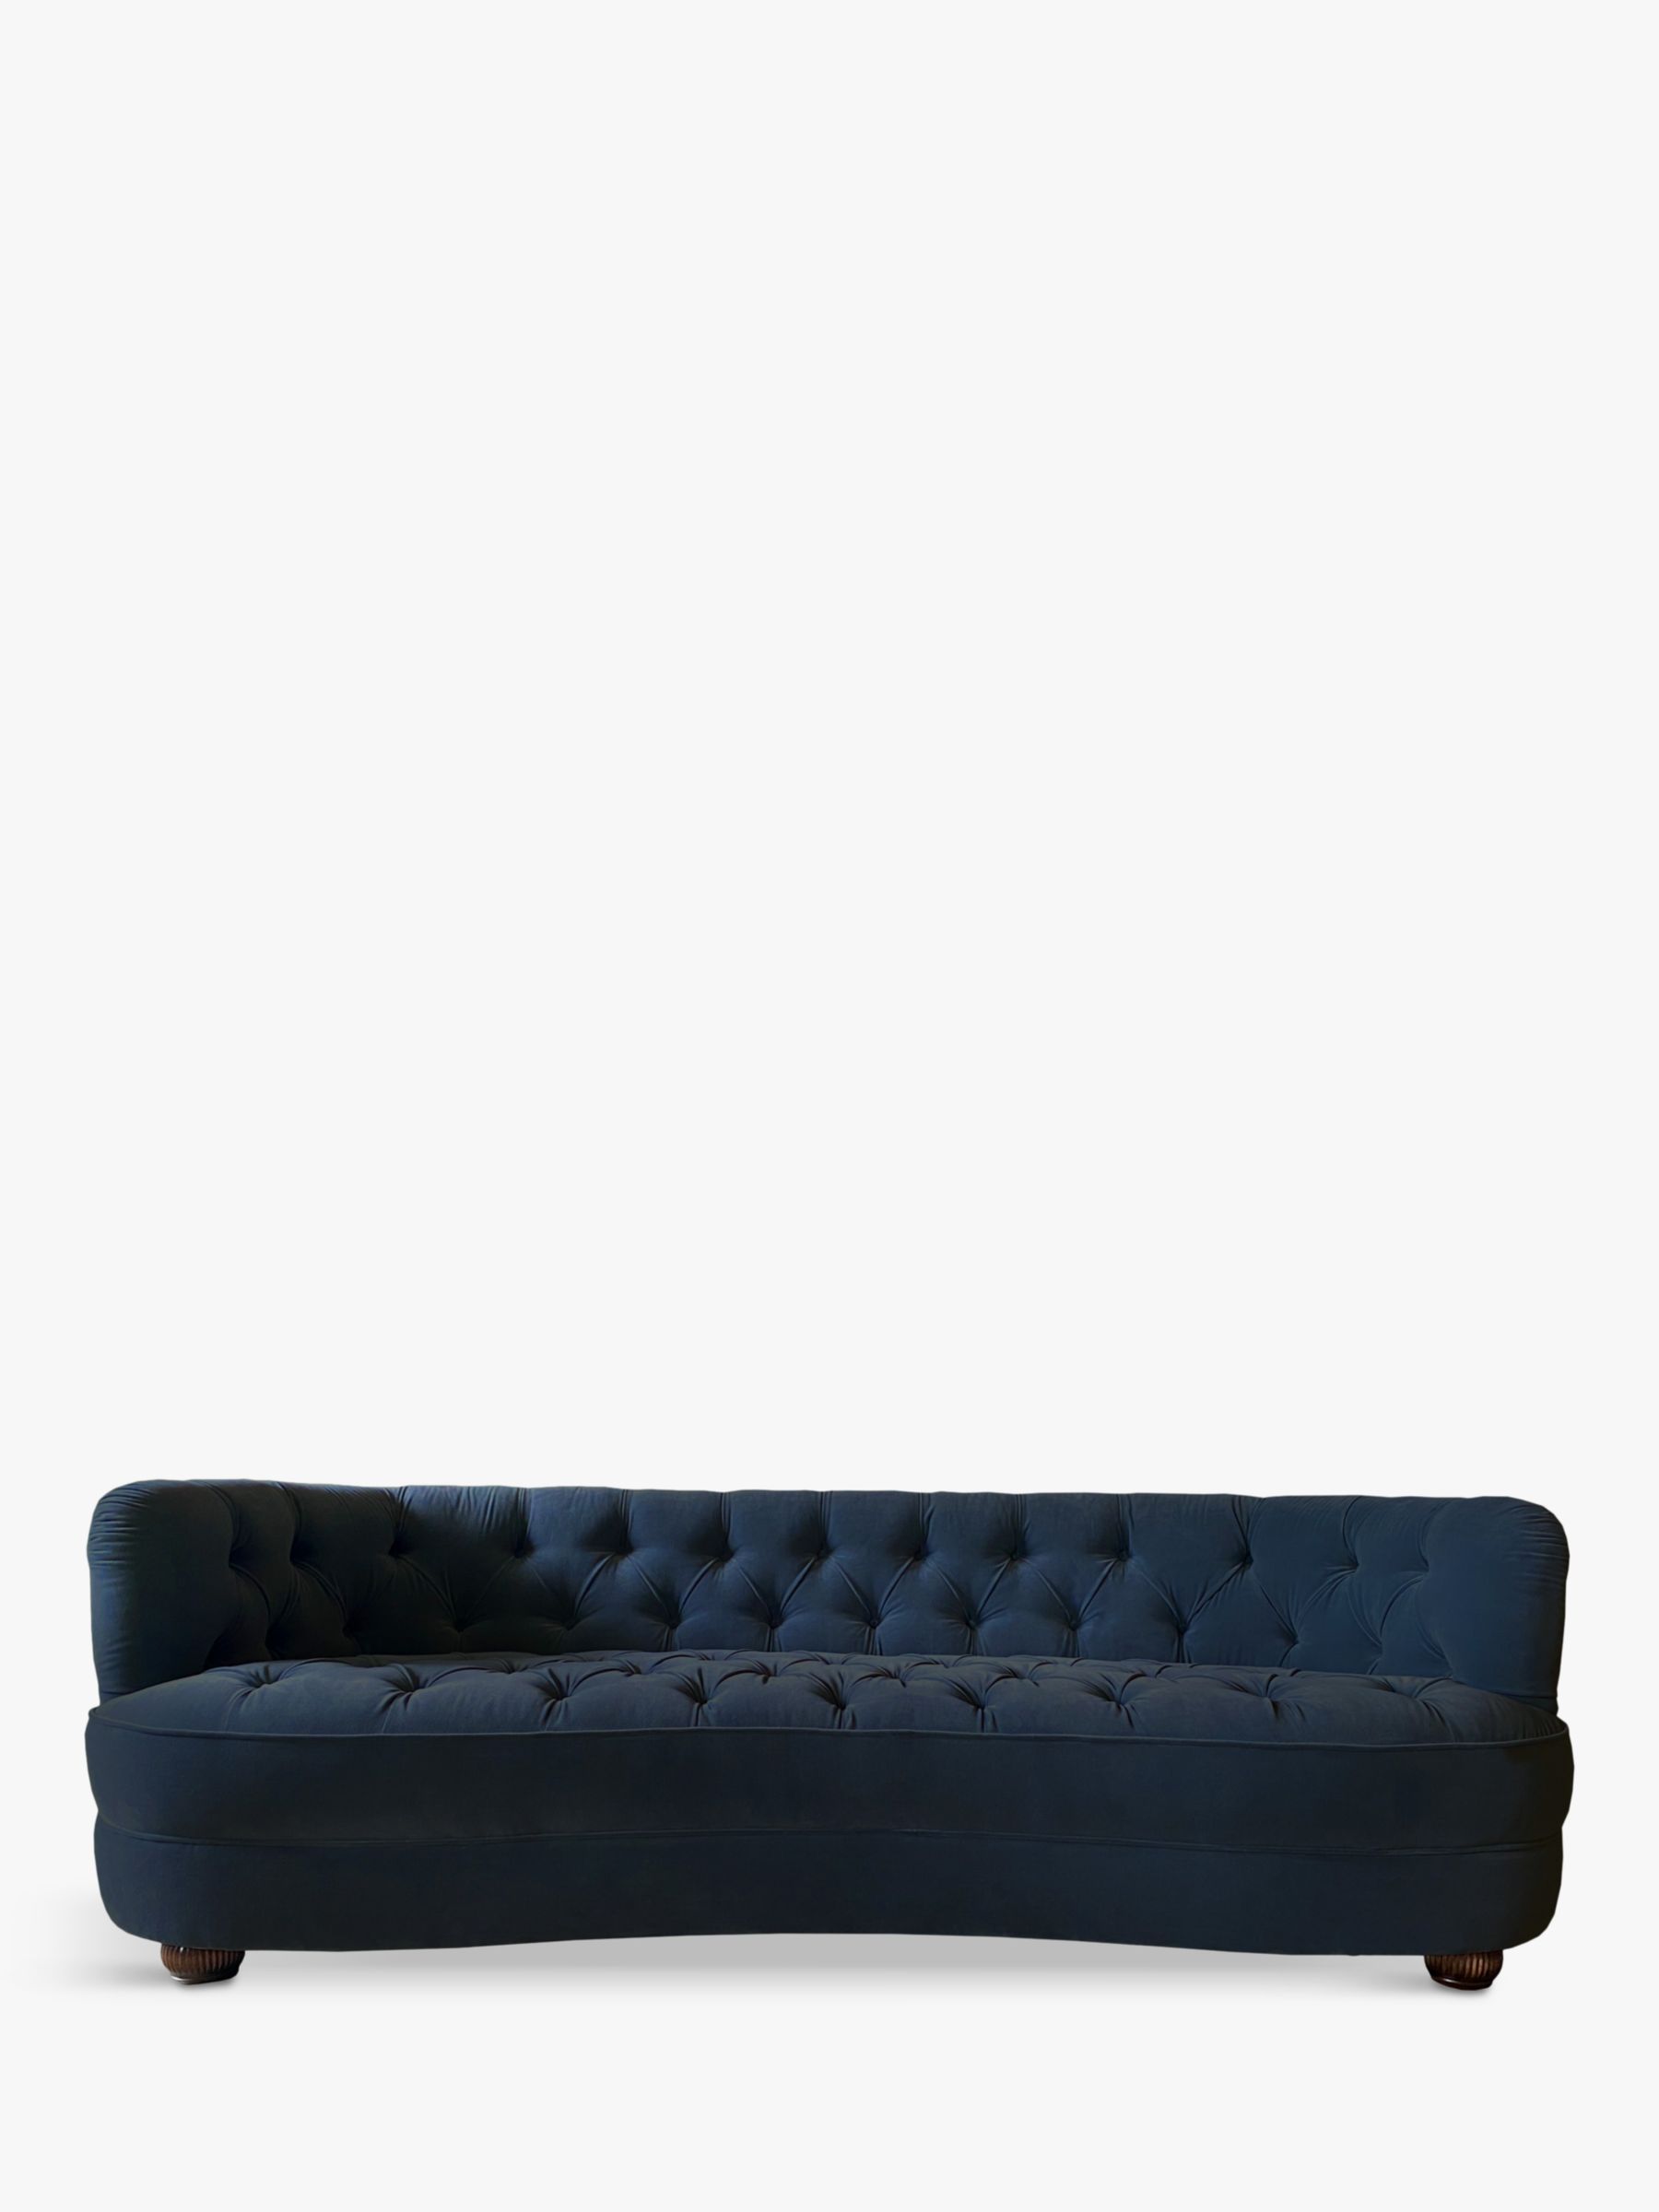 Kensington Range, Tetrad Kensington Velvet Large 3 Seater Sofa, Dark Leg, Royal Blue Velvet